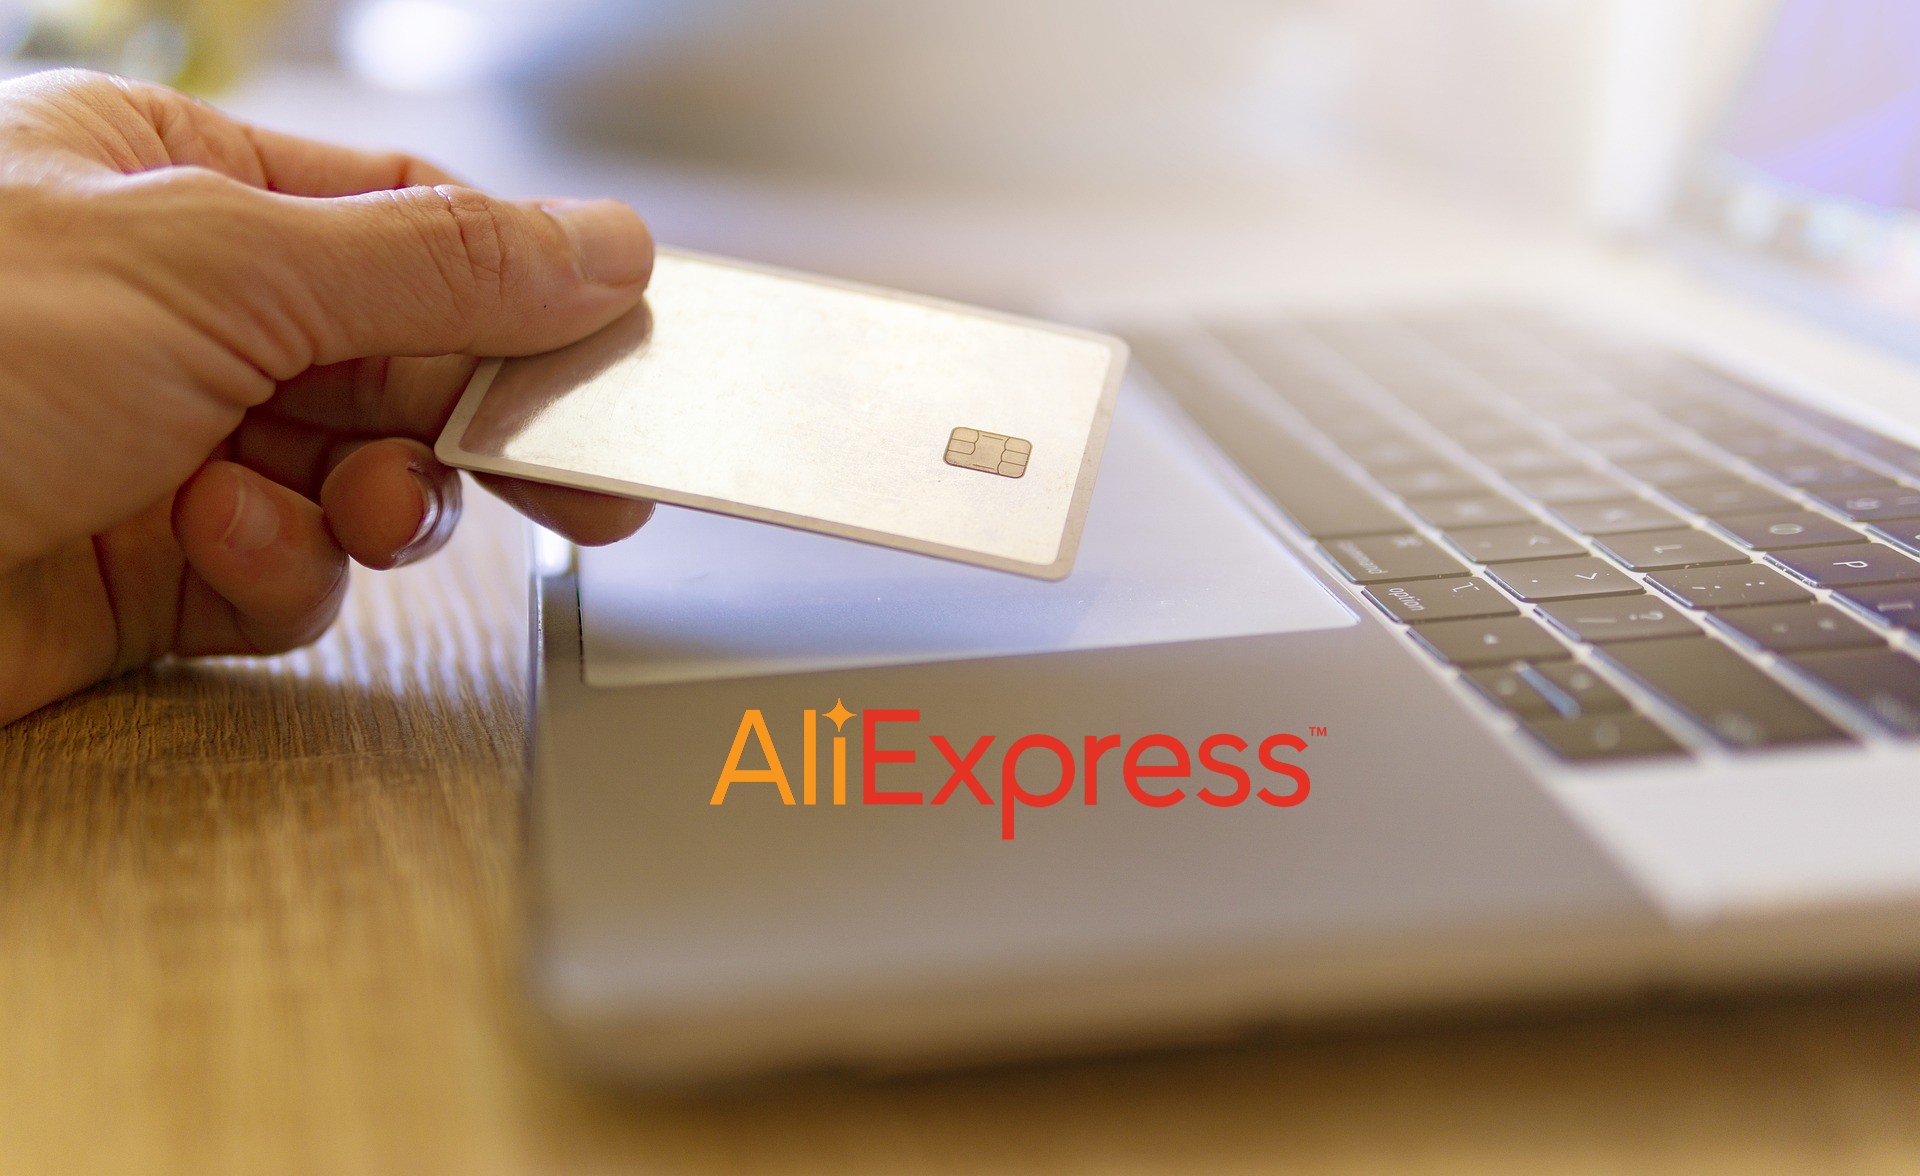 ▶ 7 problemas y riesgos de comprar en AliExpress